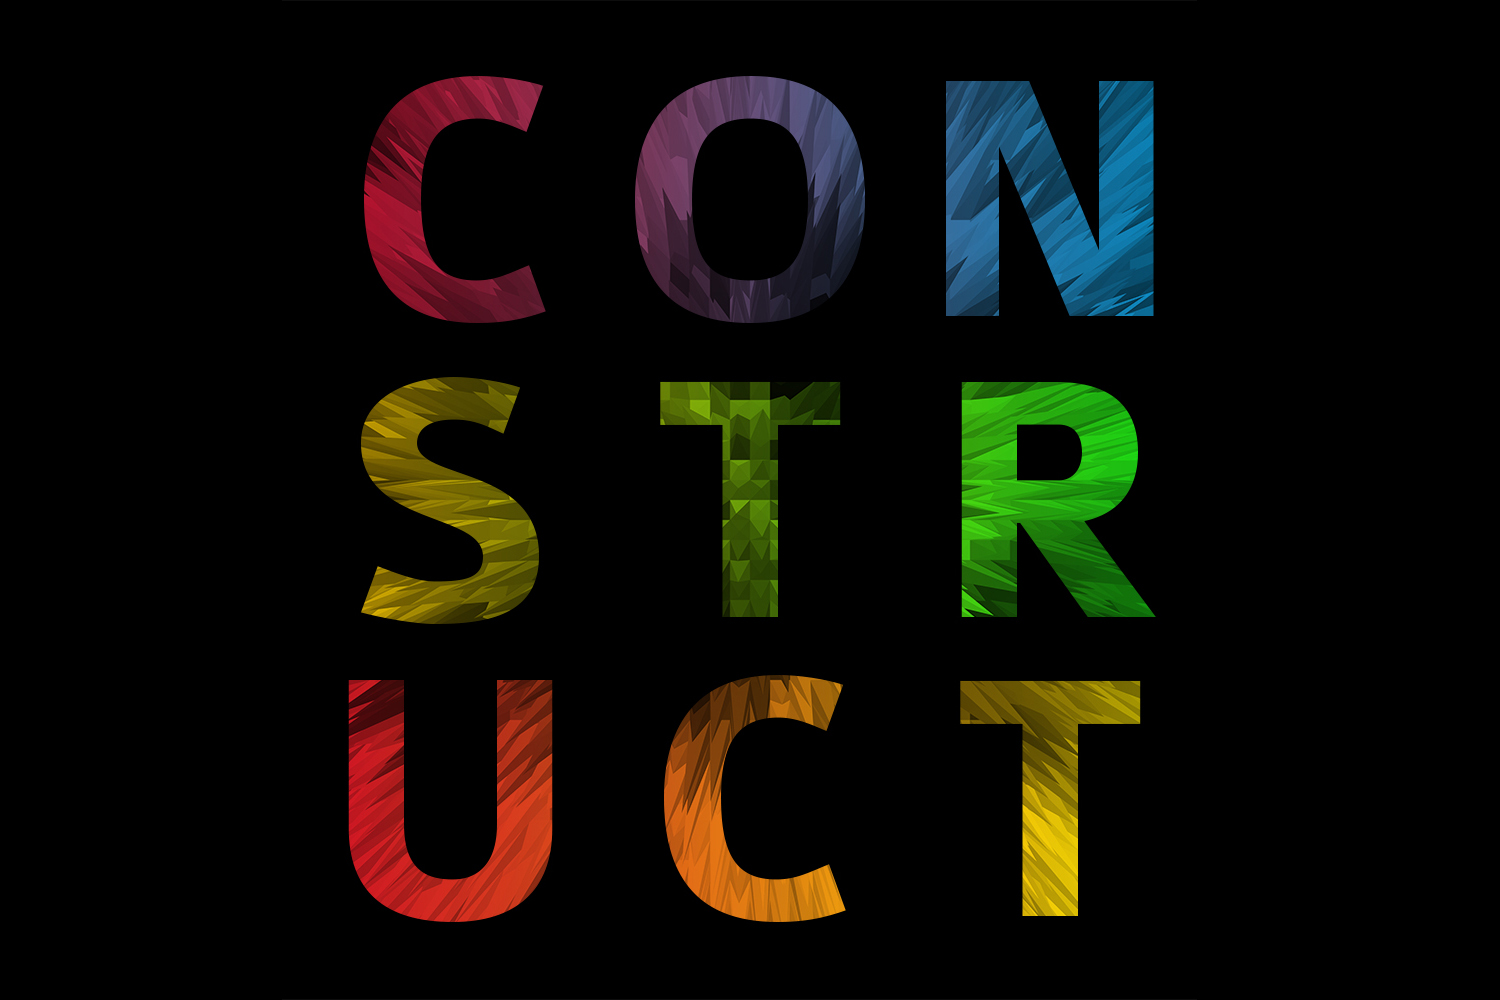 CONSTRUCT 2018 Design